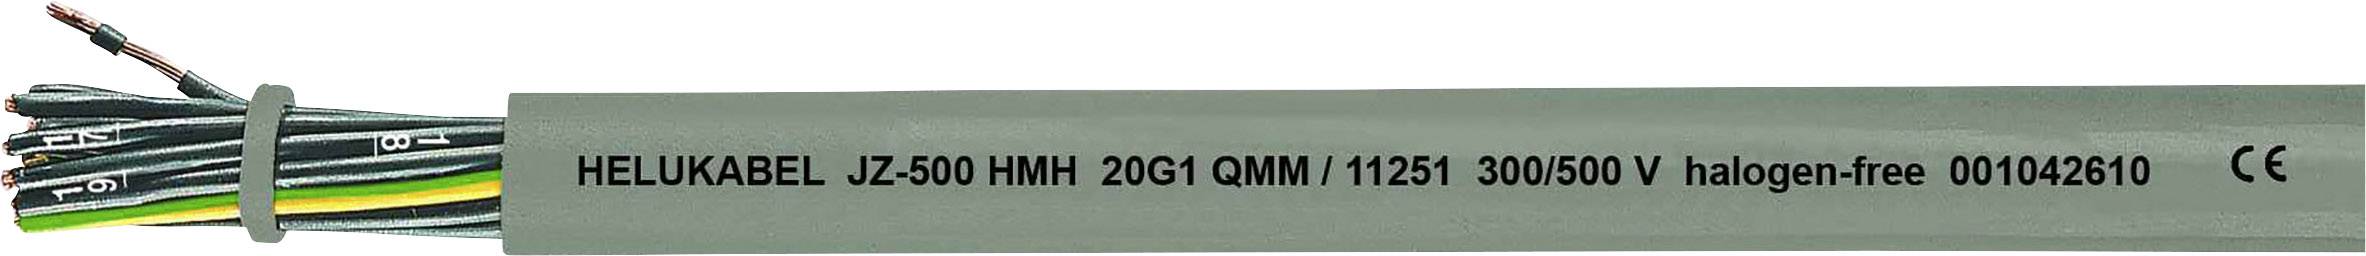 HELUKABEL JZ-500 HMH Steuerleitung 3 G 1 mm² Grau 11242-500 500 m